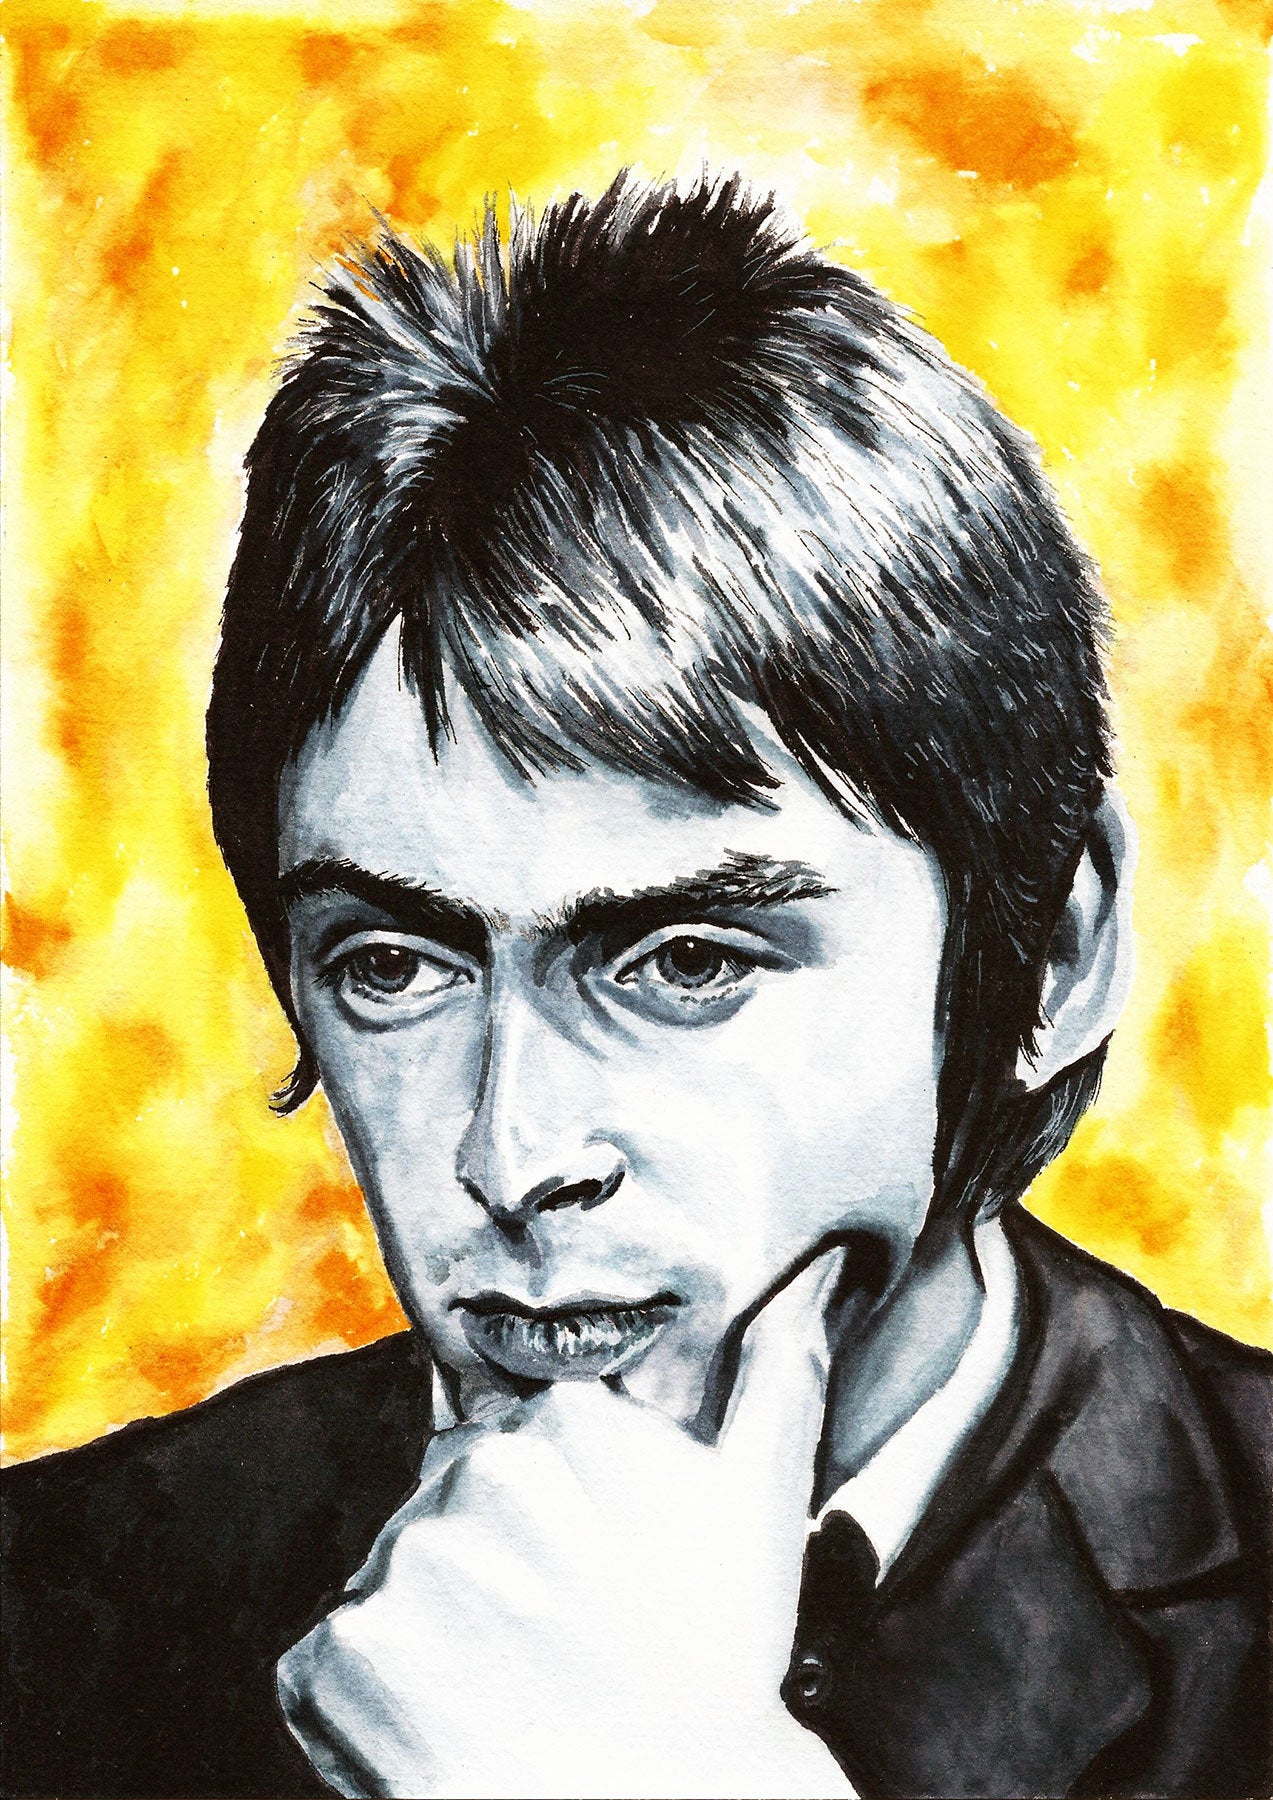 Paul Weller original watercolour portrait, The Jam wall art, Paul Weller fan gift, British mod music wall decor, Style Council